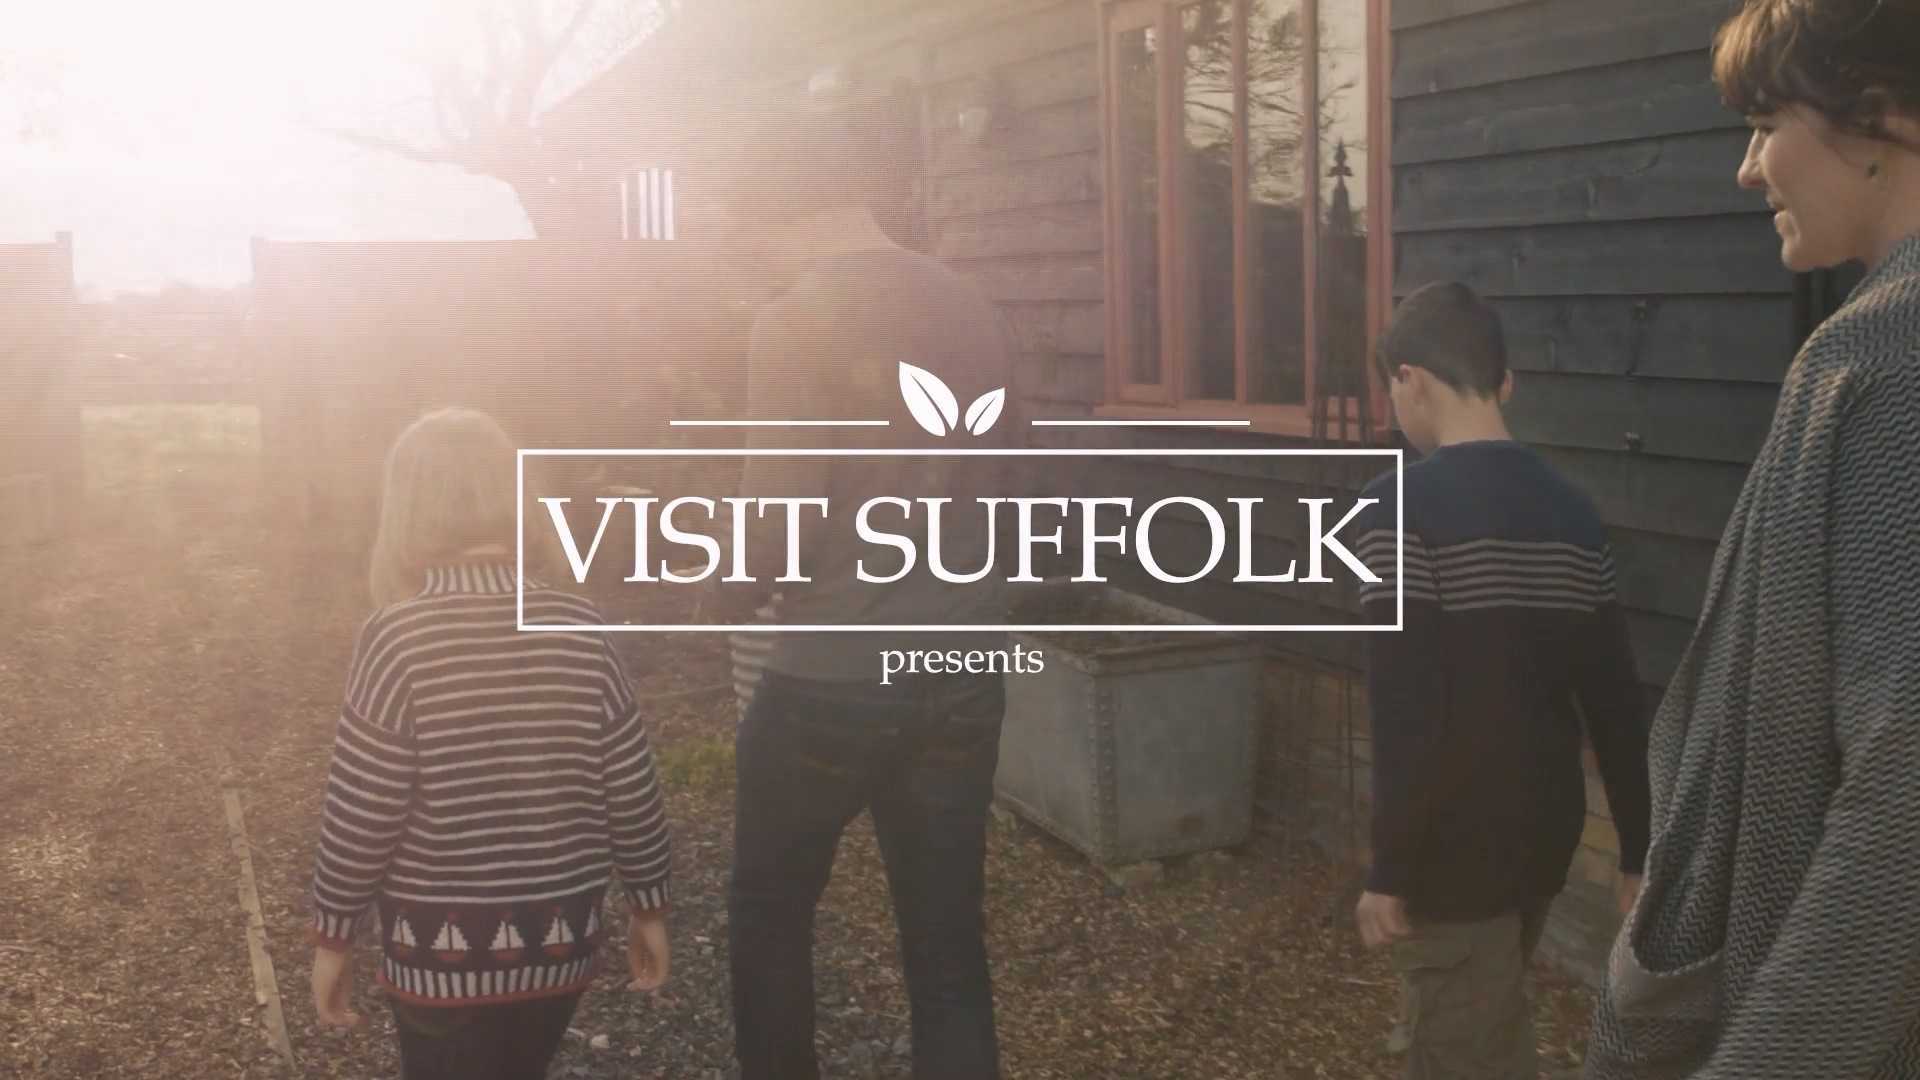 英国旅游局 | 萨福克地区全家露营地广告宣传片